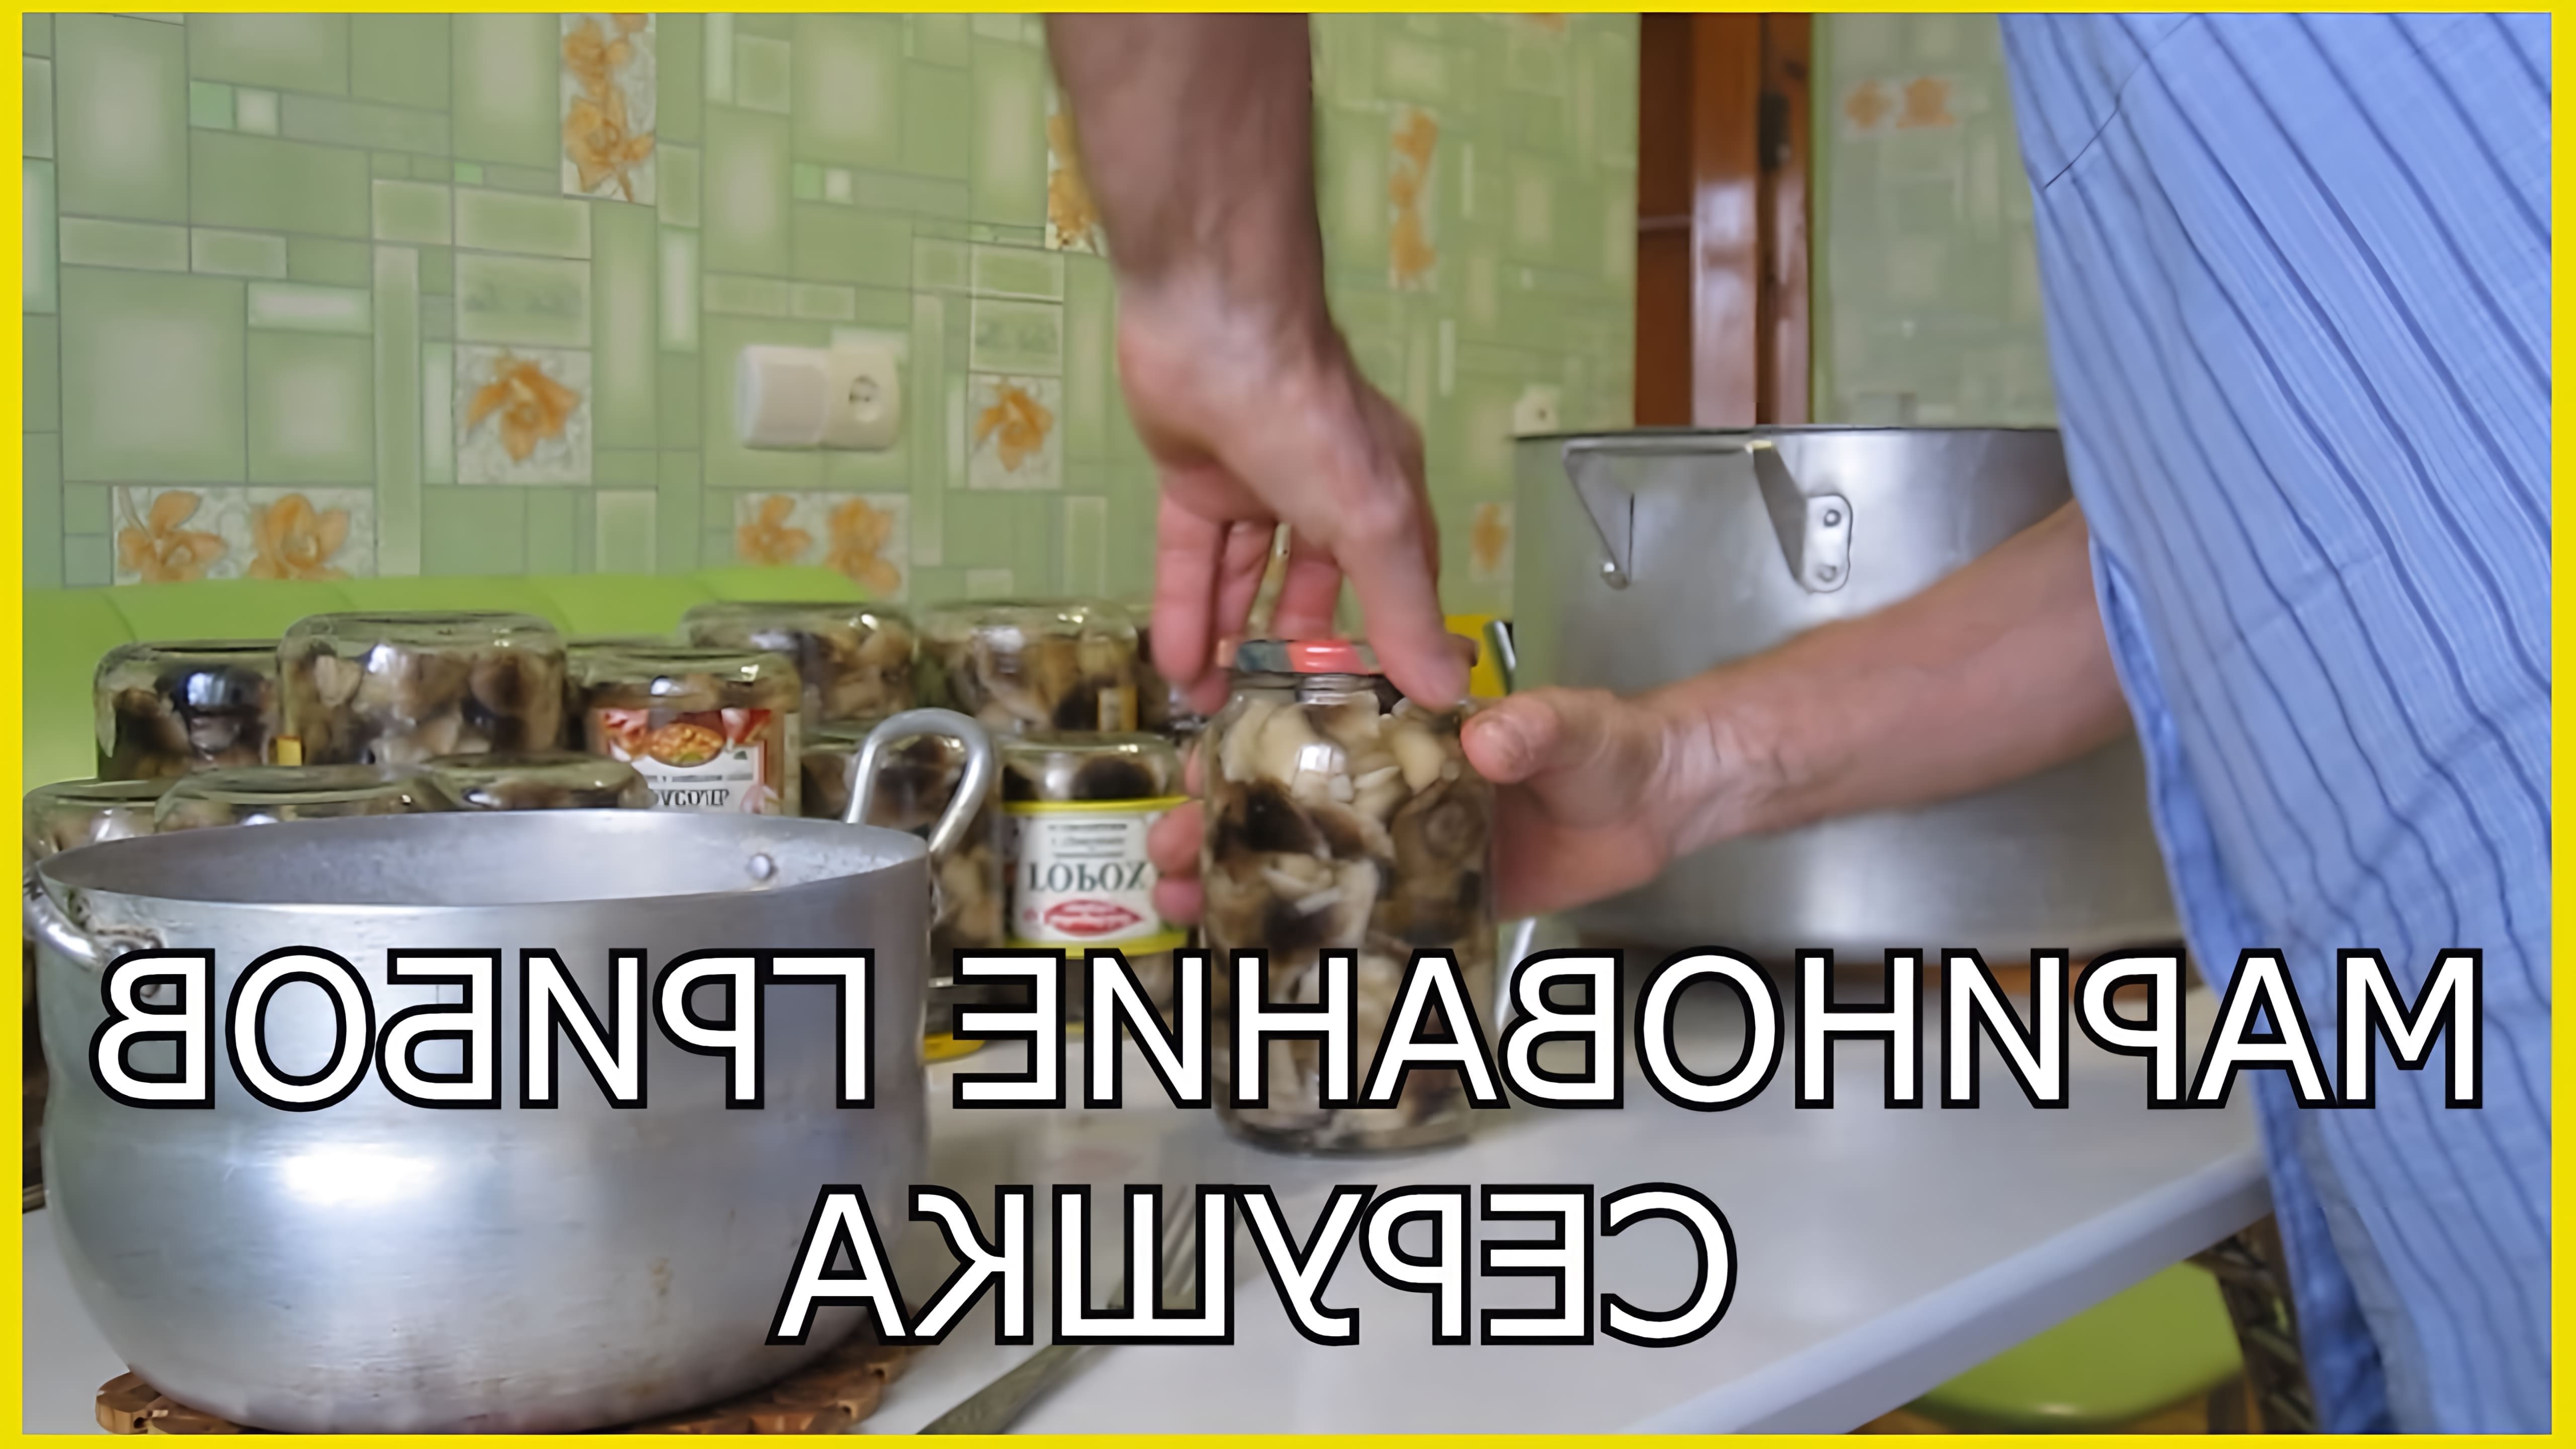 В этом видео рассказывается о процессе консервации грибов серушек